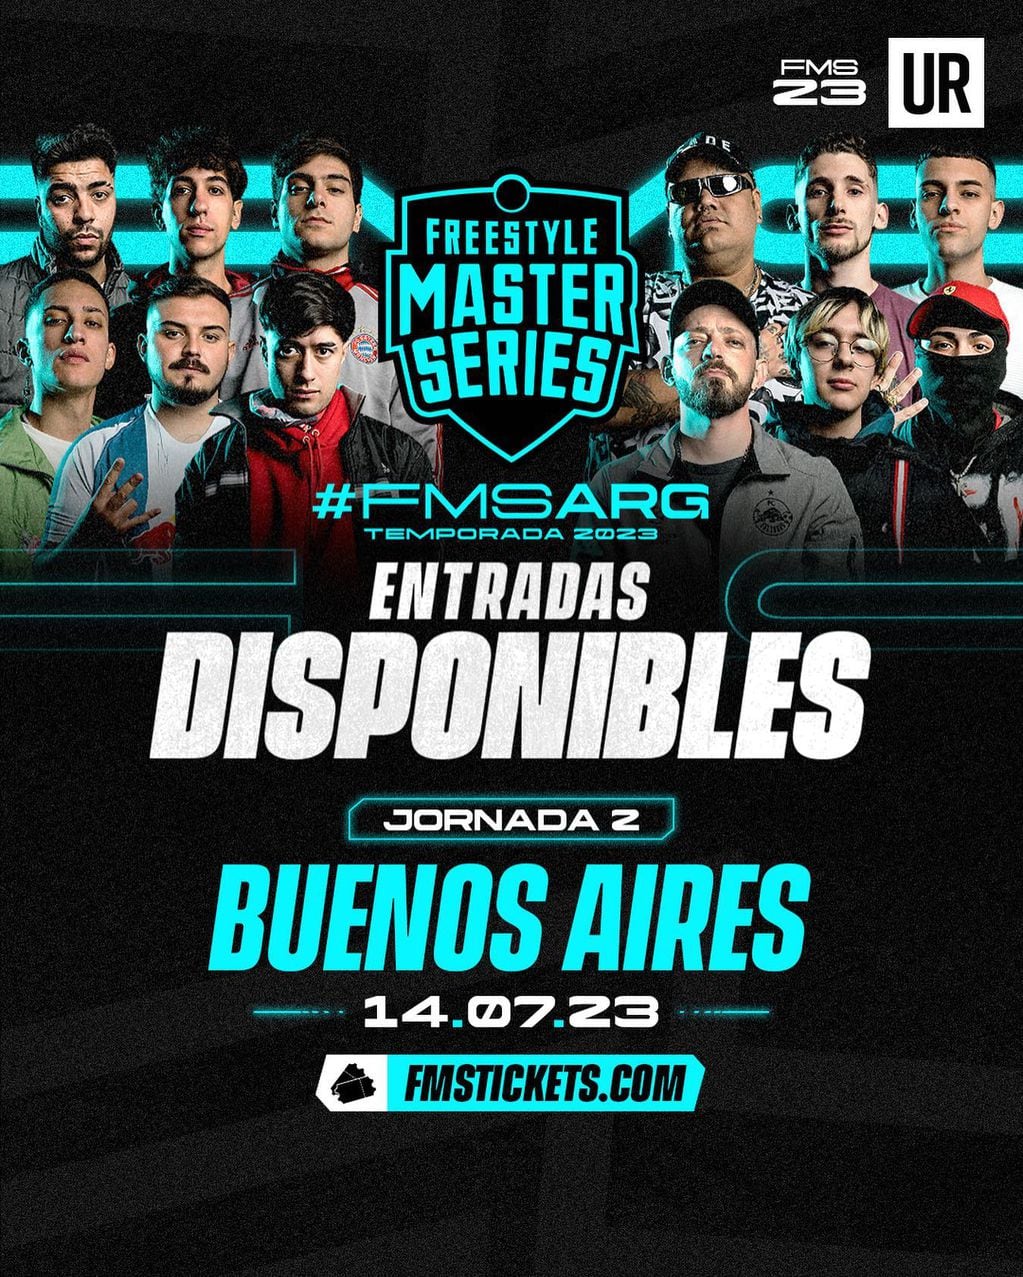 FMS Argentina anunció la jornada 2 en Buenos Aires: cuándo será y precios de entradas